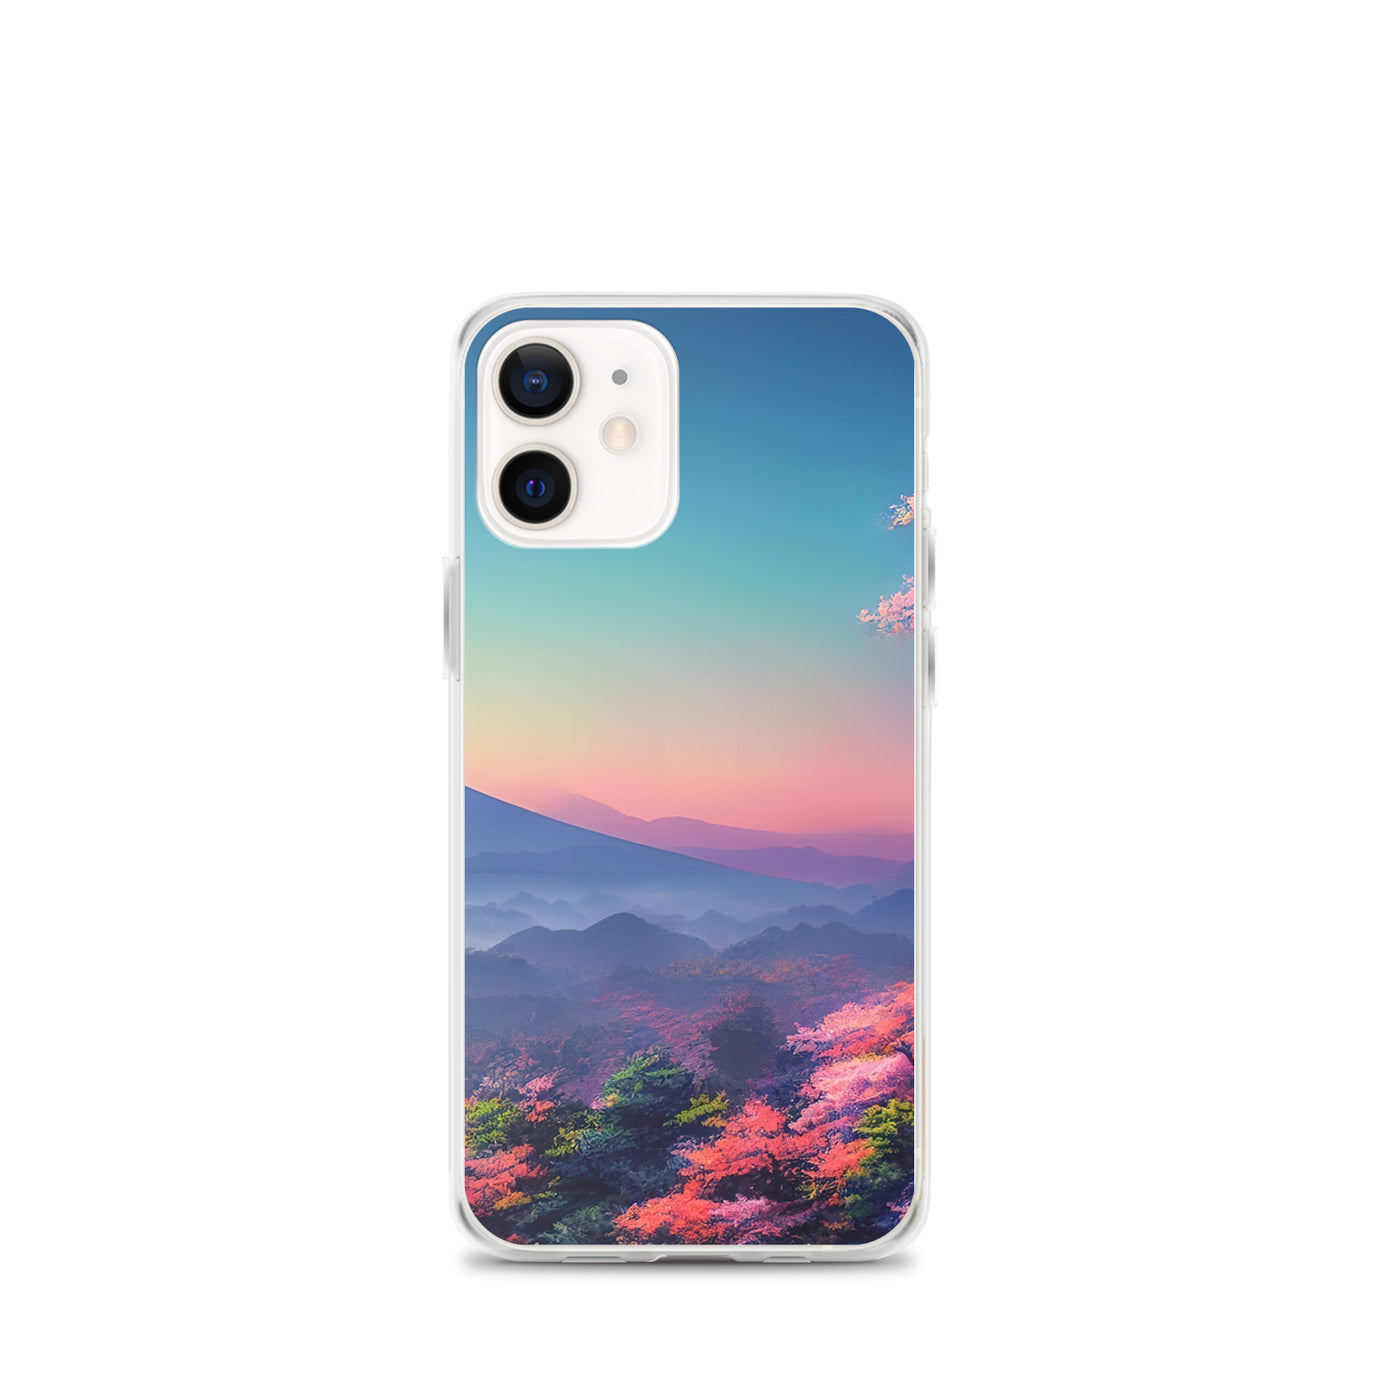 Berg und Wald mit pinken Bäumen - Landschaftsmalerei - iPhone Schutzhülle (durchsichtig) berge xxx iPhone 12 mini